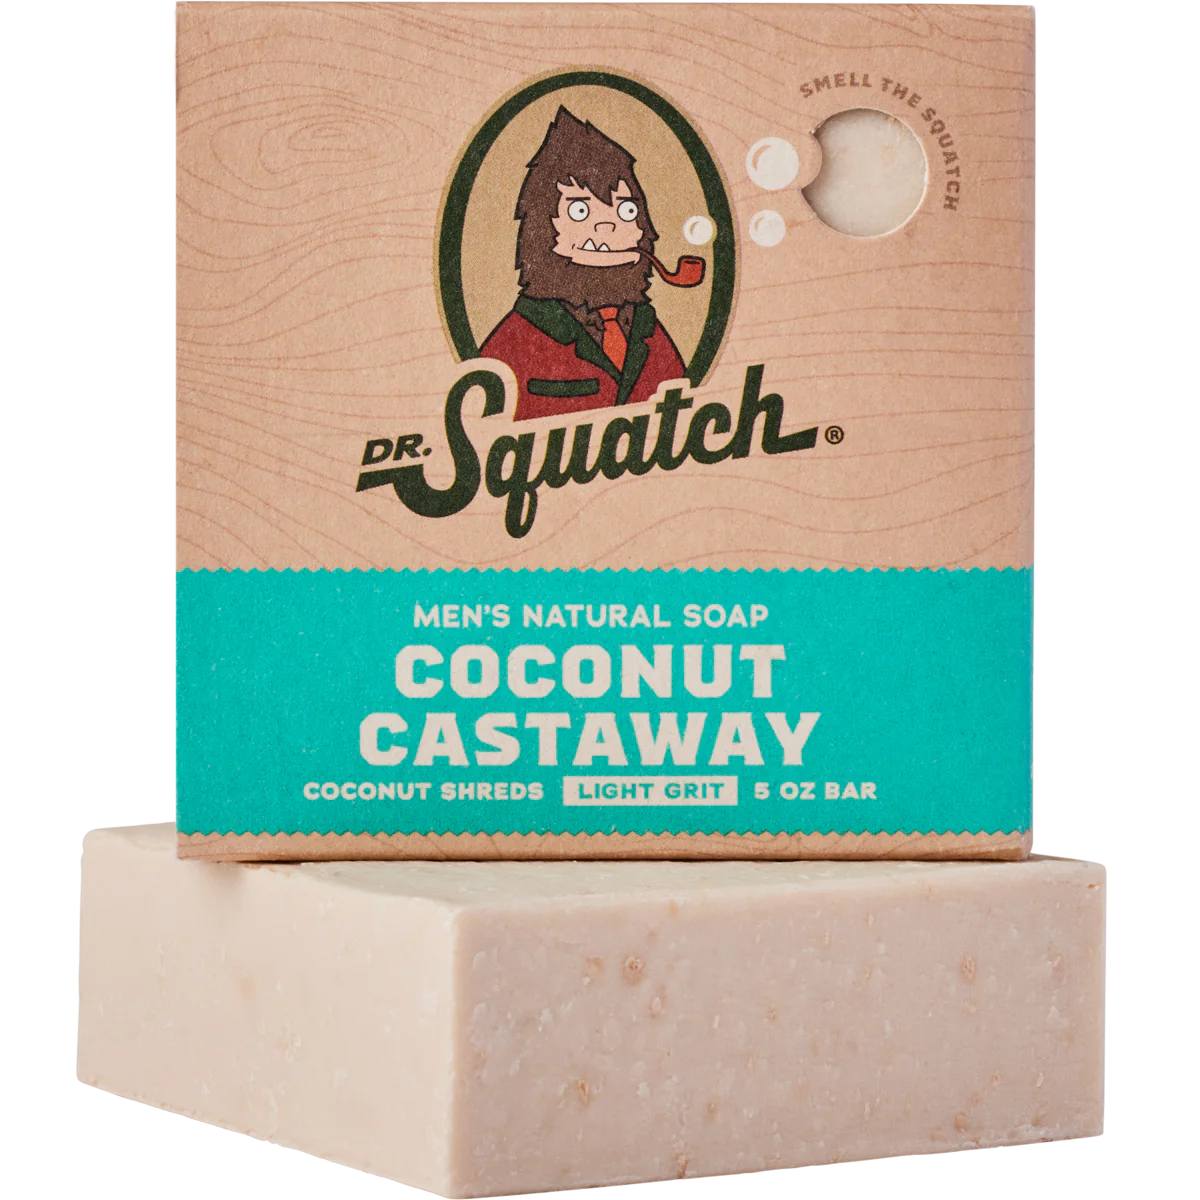 Men's Natural Soap - Coconut Castaway